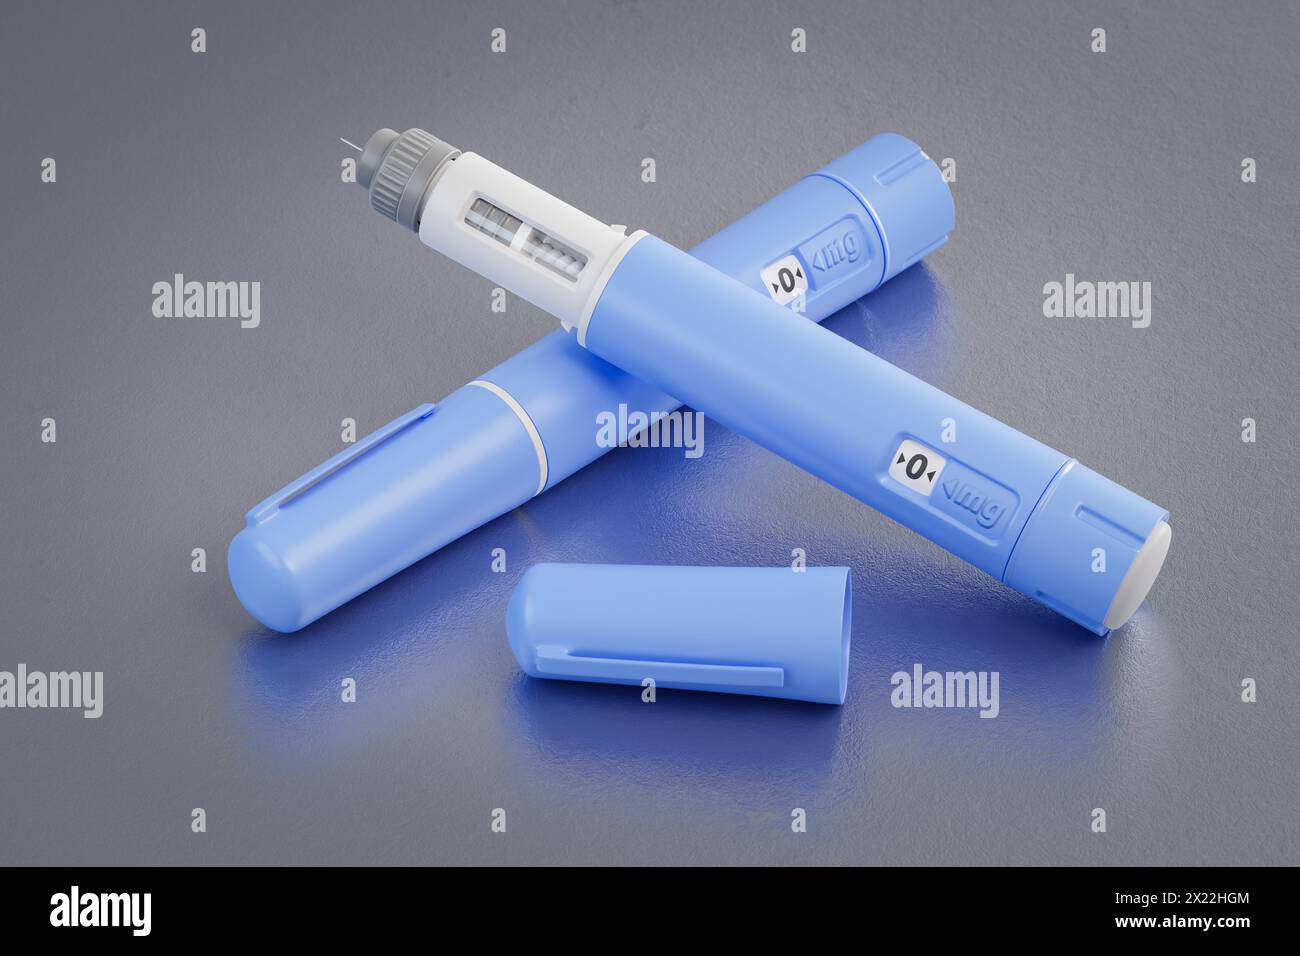 Due penne dosatrici di un fittizio farmaco Semaglutide utilizzato per la perdita di peso (farmaco antidiabetico o anti-obesità) su uno sfondo metallico graffiato. Foto Stock